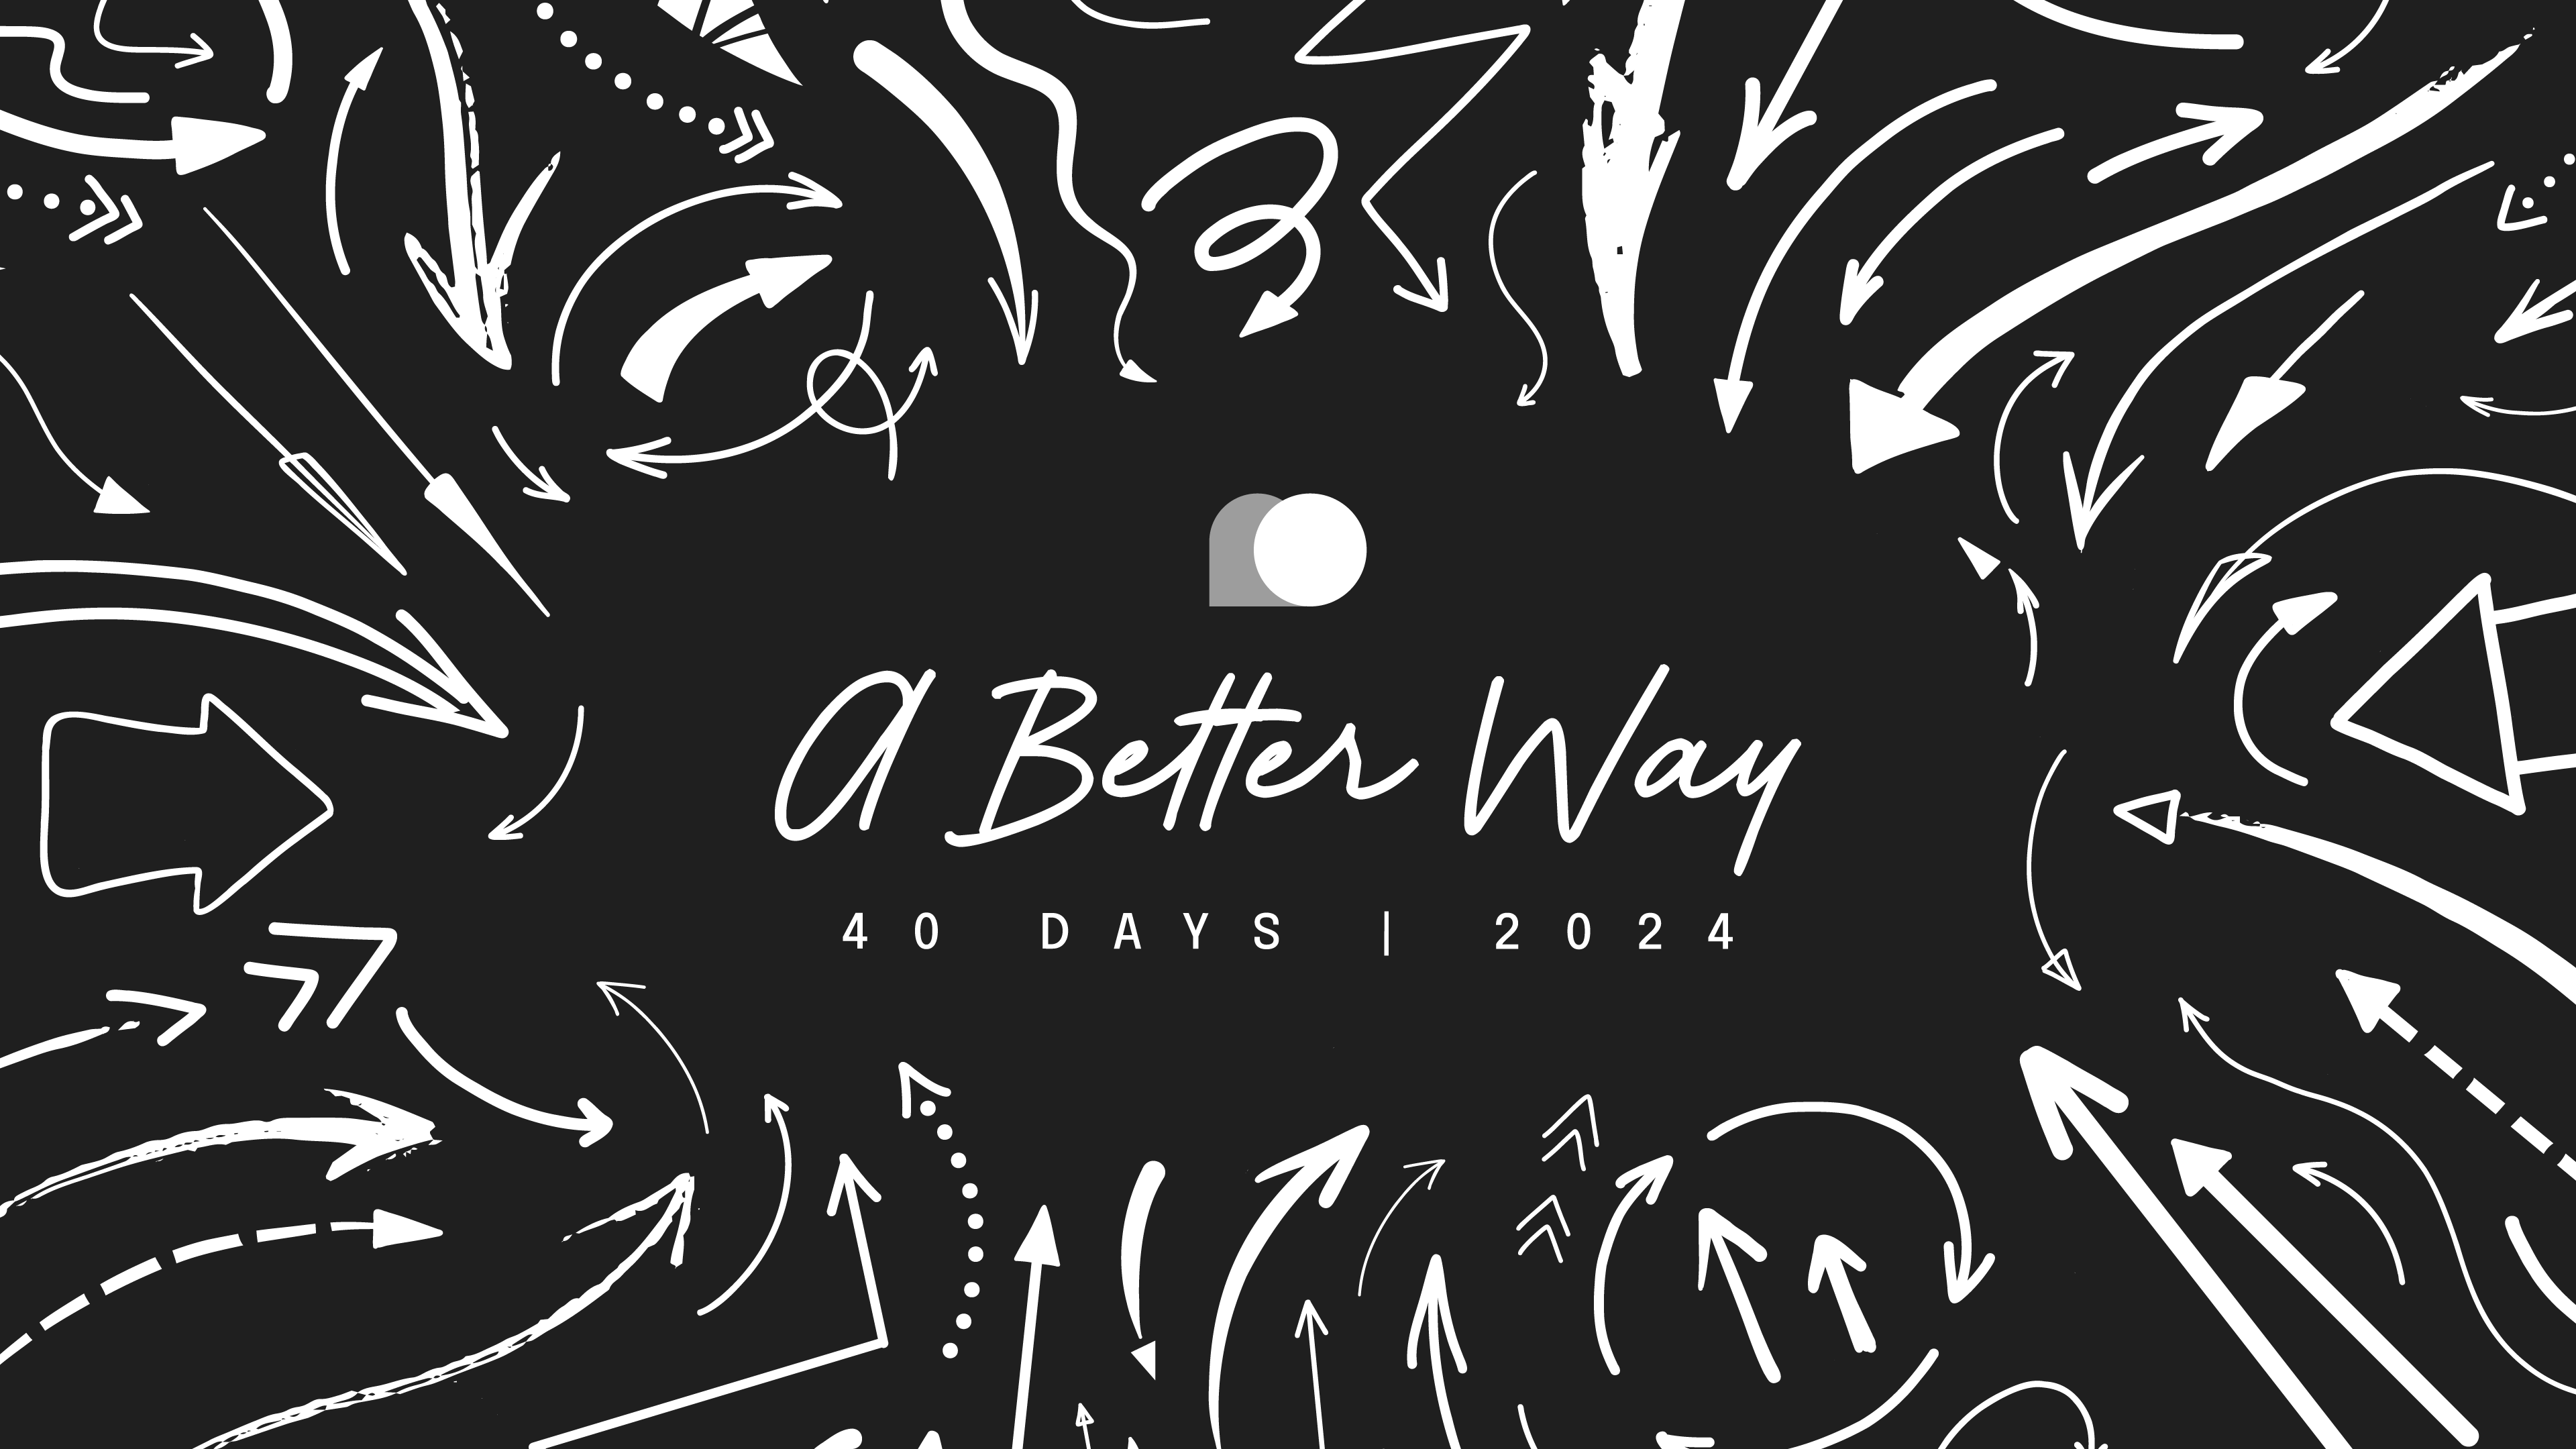 40 Days 2024 – A Better Way